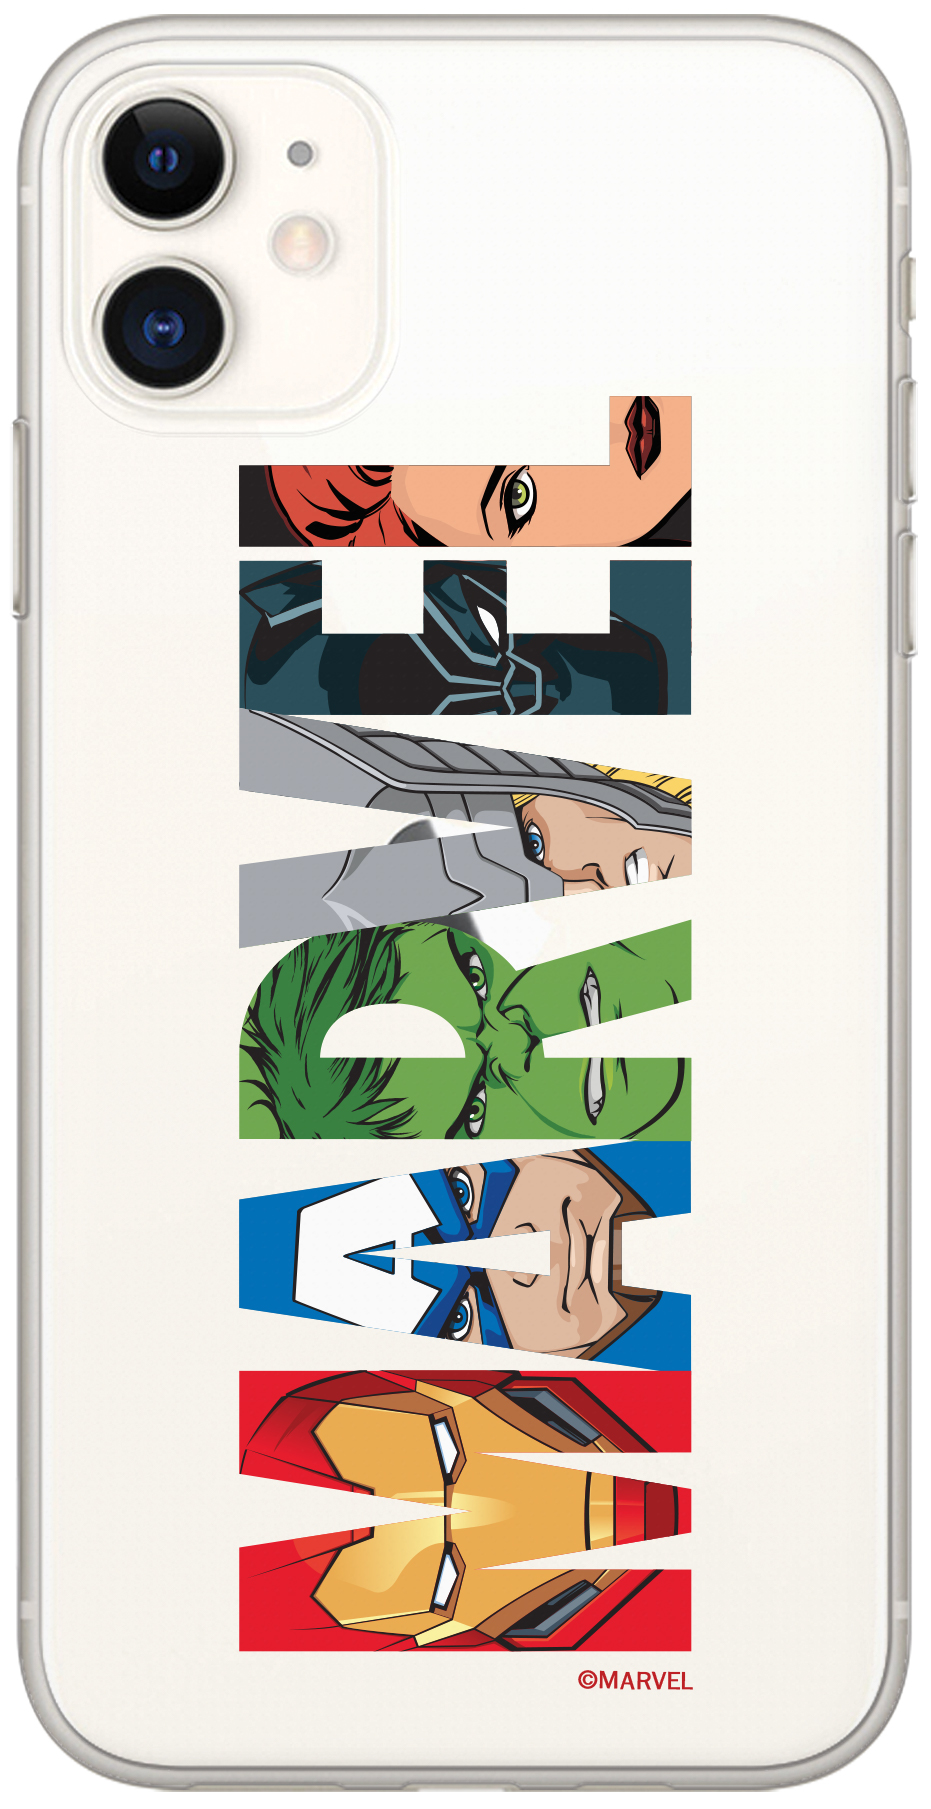 Ochranný kryt pro iPhone 6 / 6S - Marvel, Marvel 011